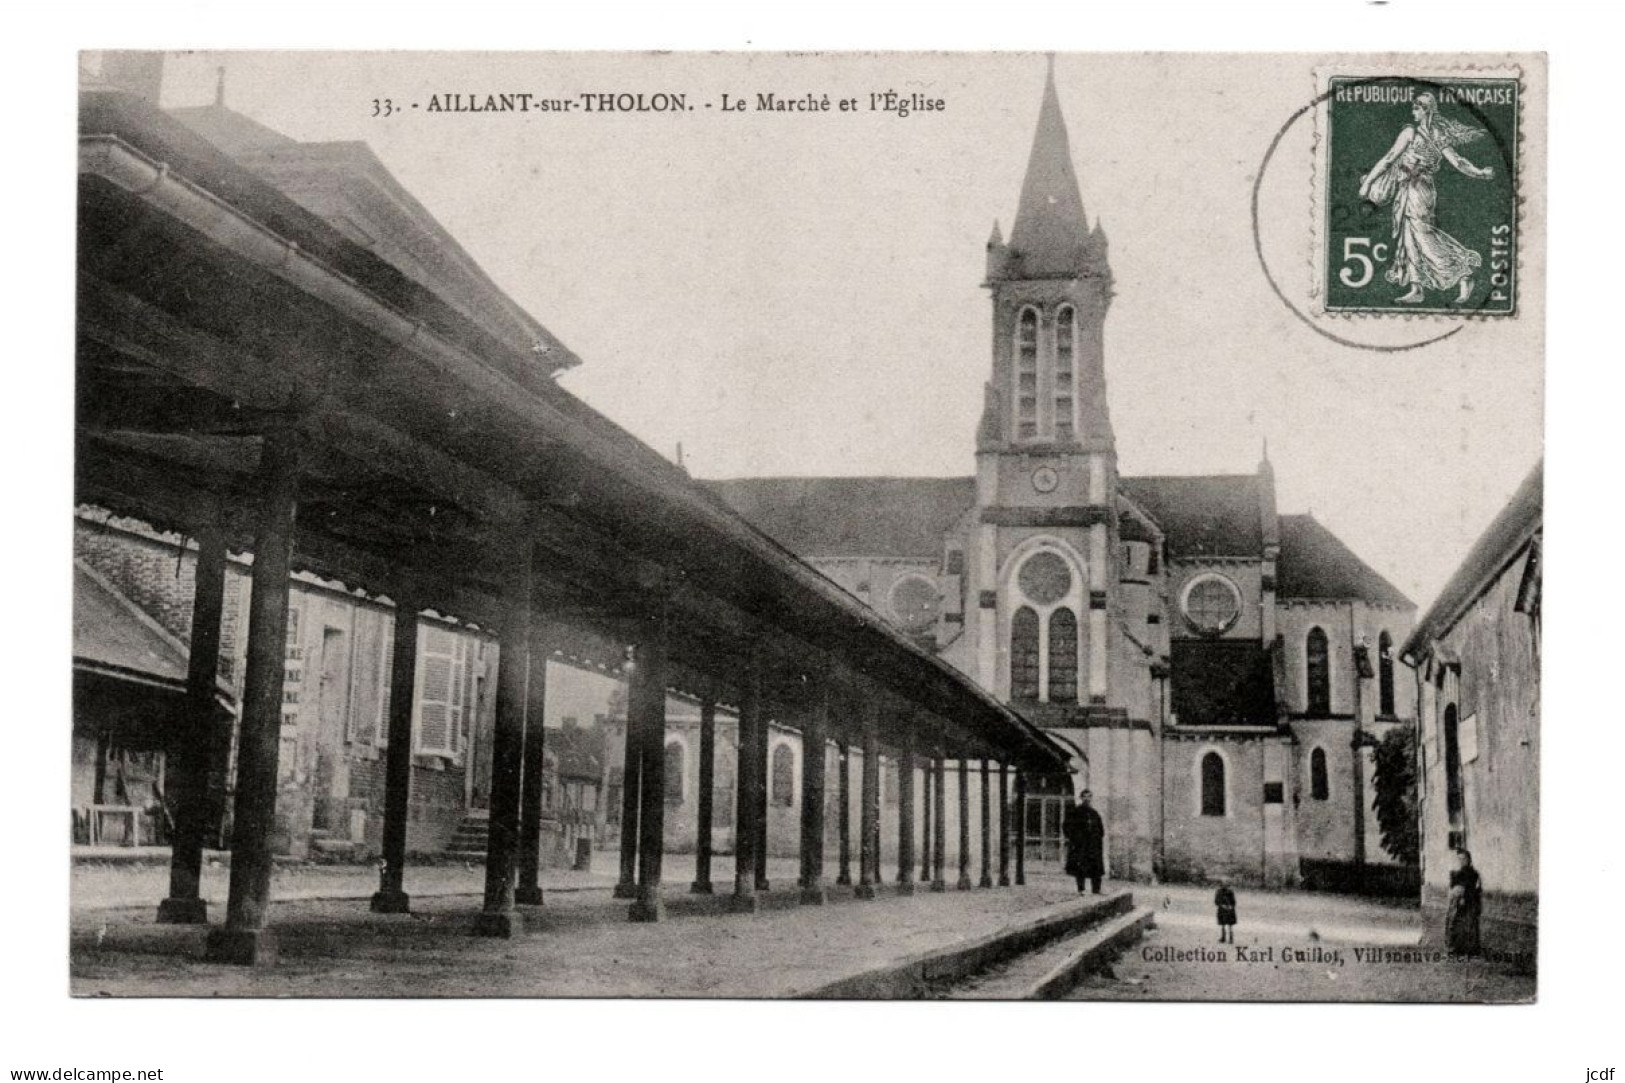 89 AILLANT SUR THOLON Le Marché Et L'Eglise N° 33 - Coll. Karl Guillot - La Halle - Animée - Aillant Sur Tholon